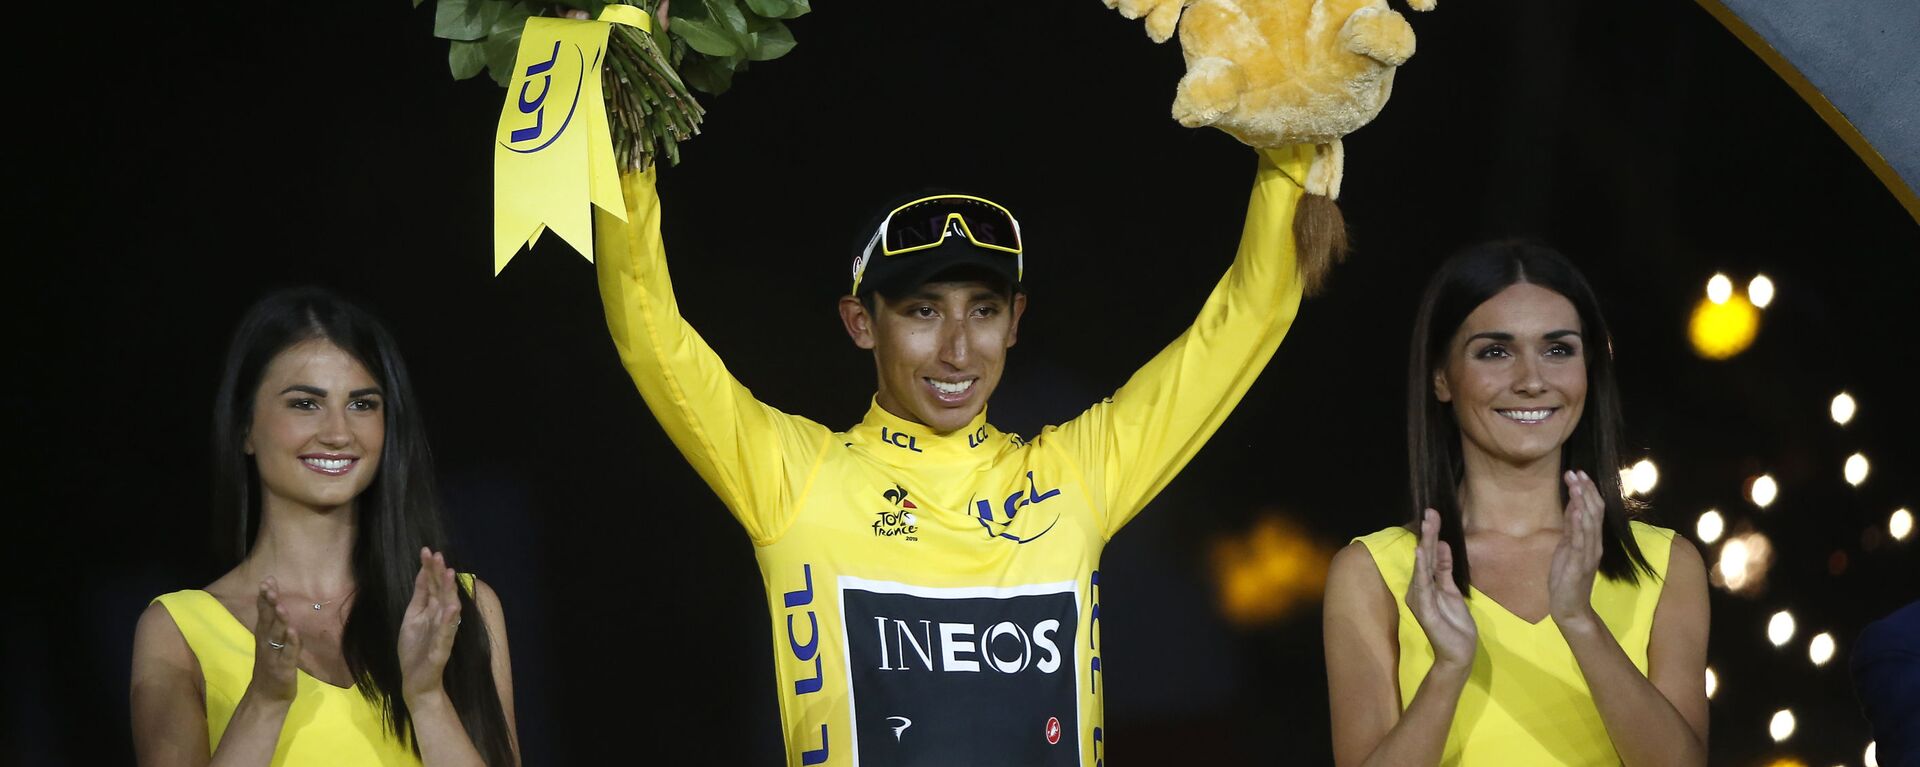 El ciclista colombiano Egan Bernal, primer latinaomericano en ganar el Tour de France en 2019 - Sputnik Mundo, 1920, 24.01.2022